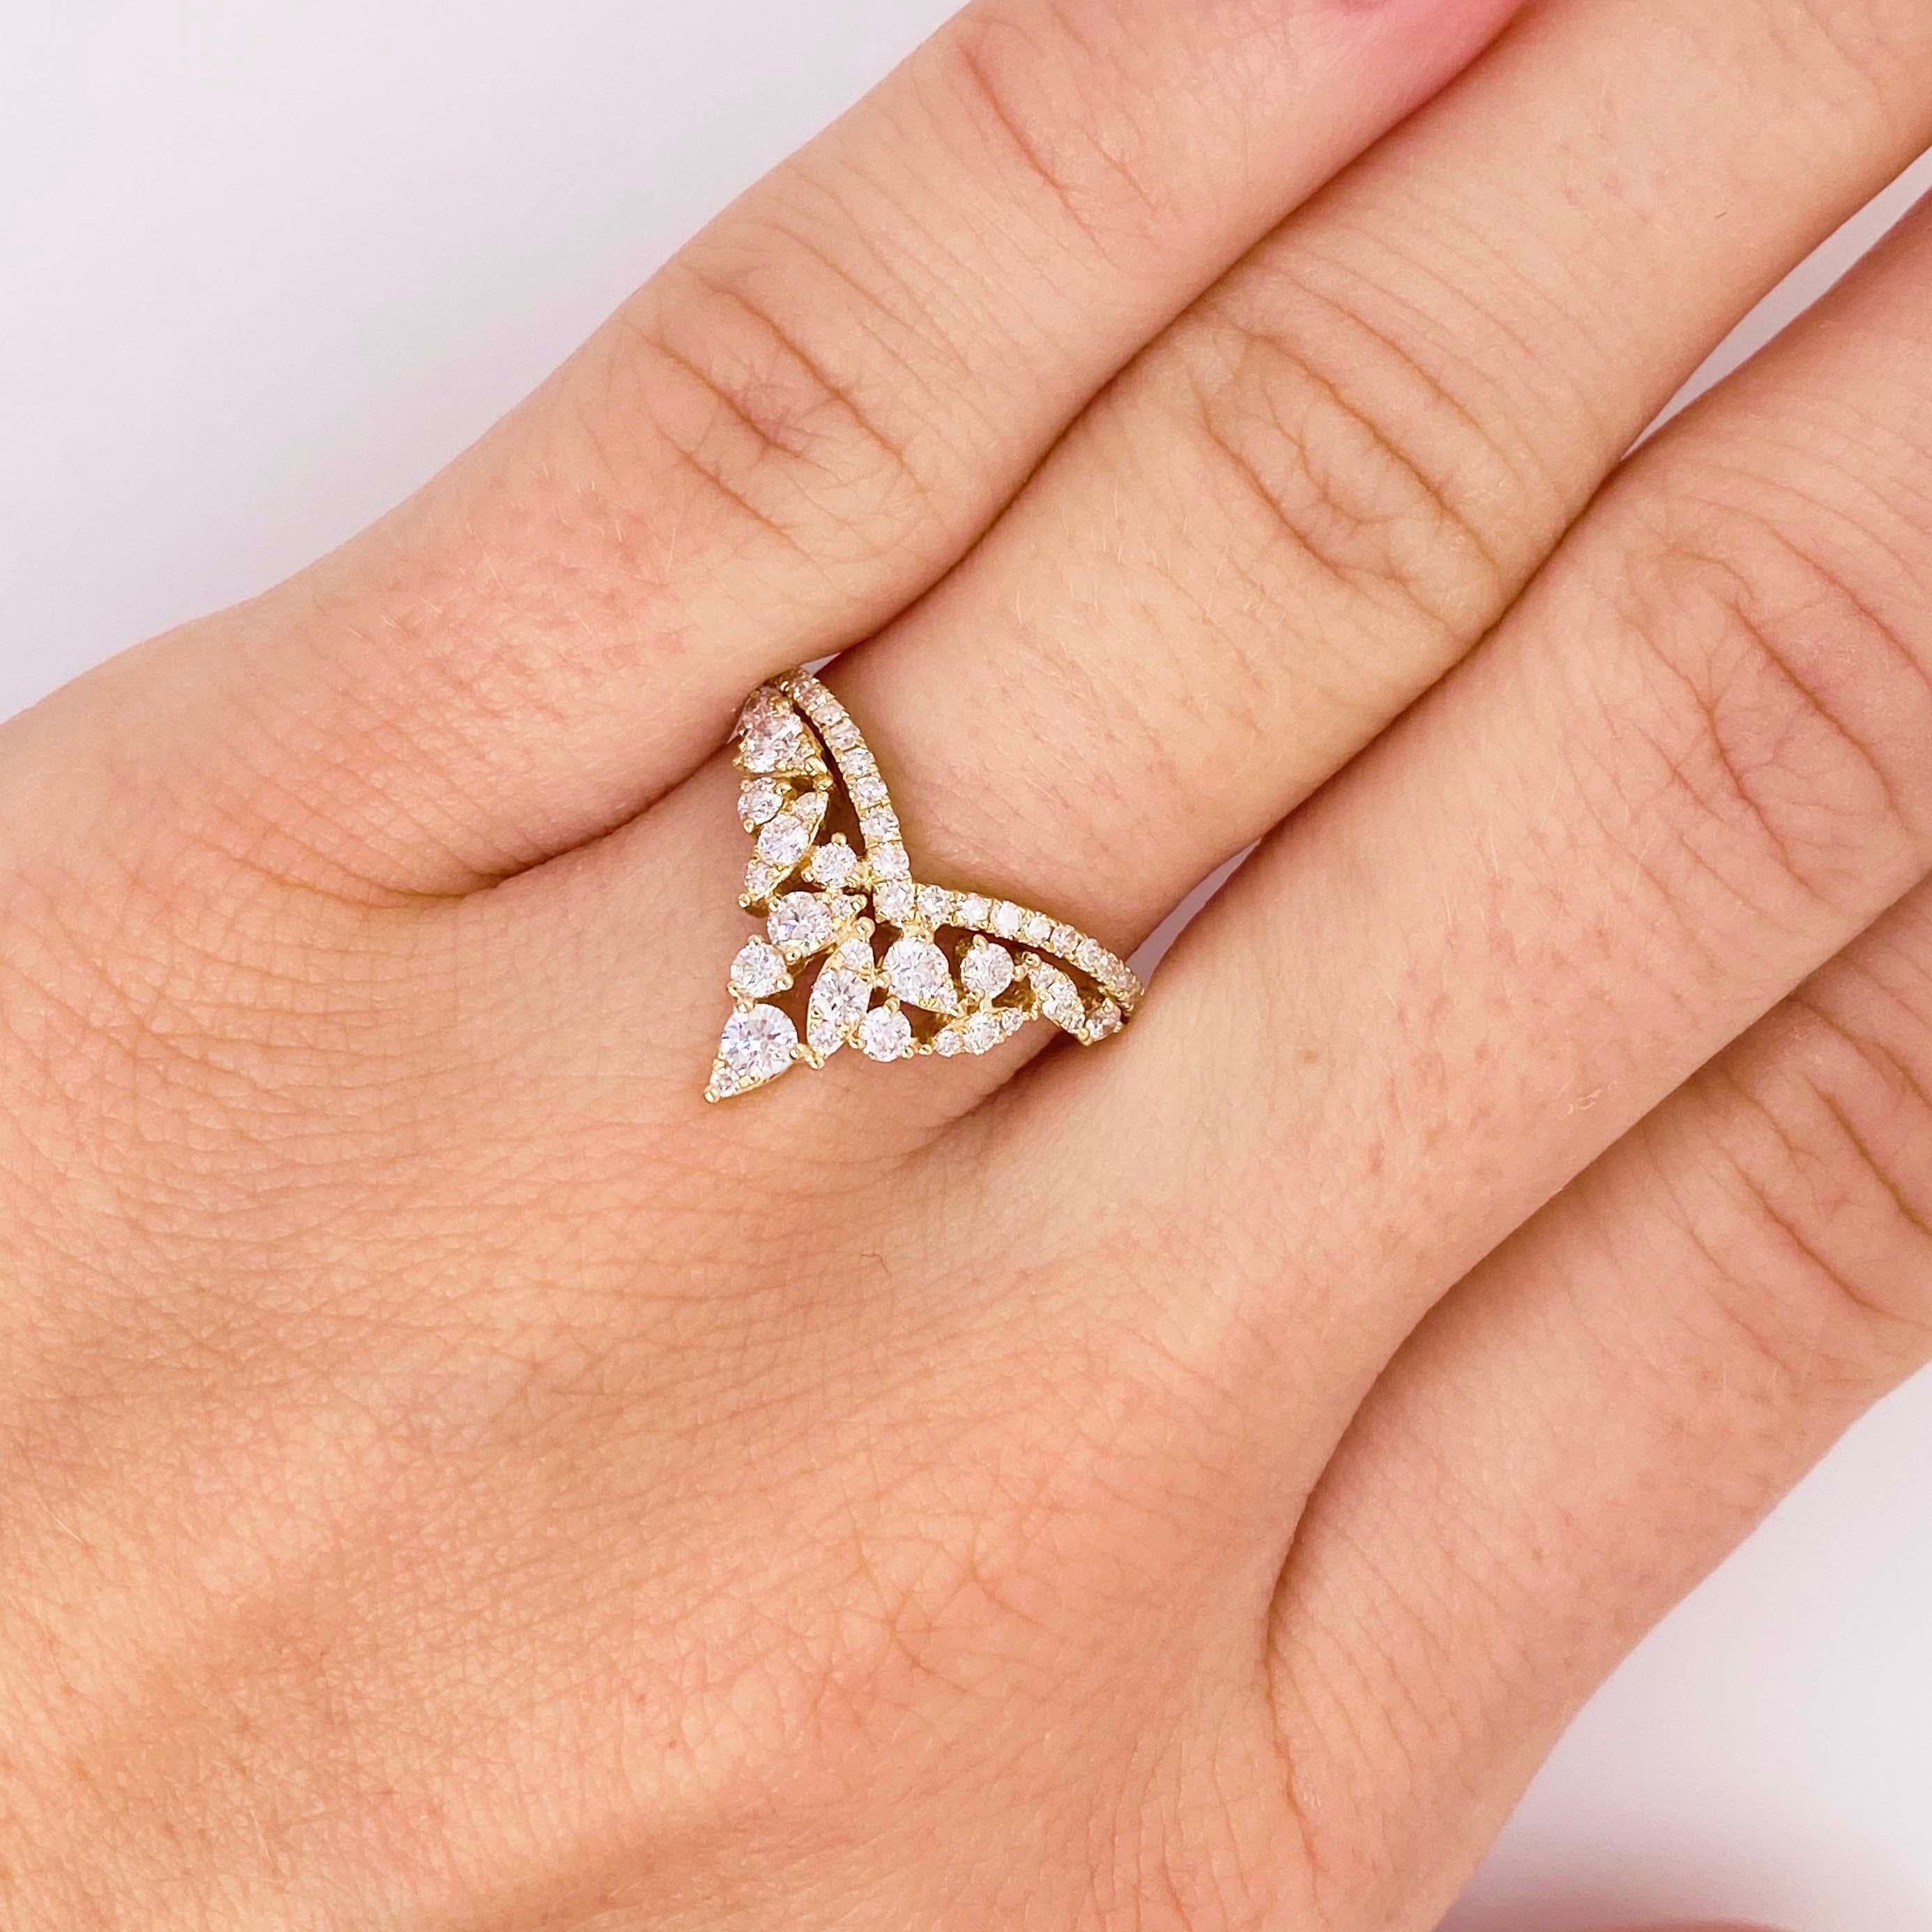 Superbe anneau en diamant V ! Ce magnifique bracelet en diamants présente un design unique et brillant. Avec une grappe de diamants blancs brillants, organisés en une forme en 